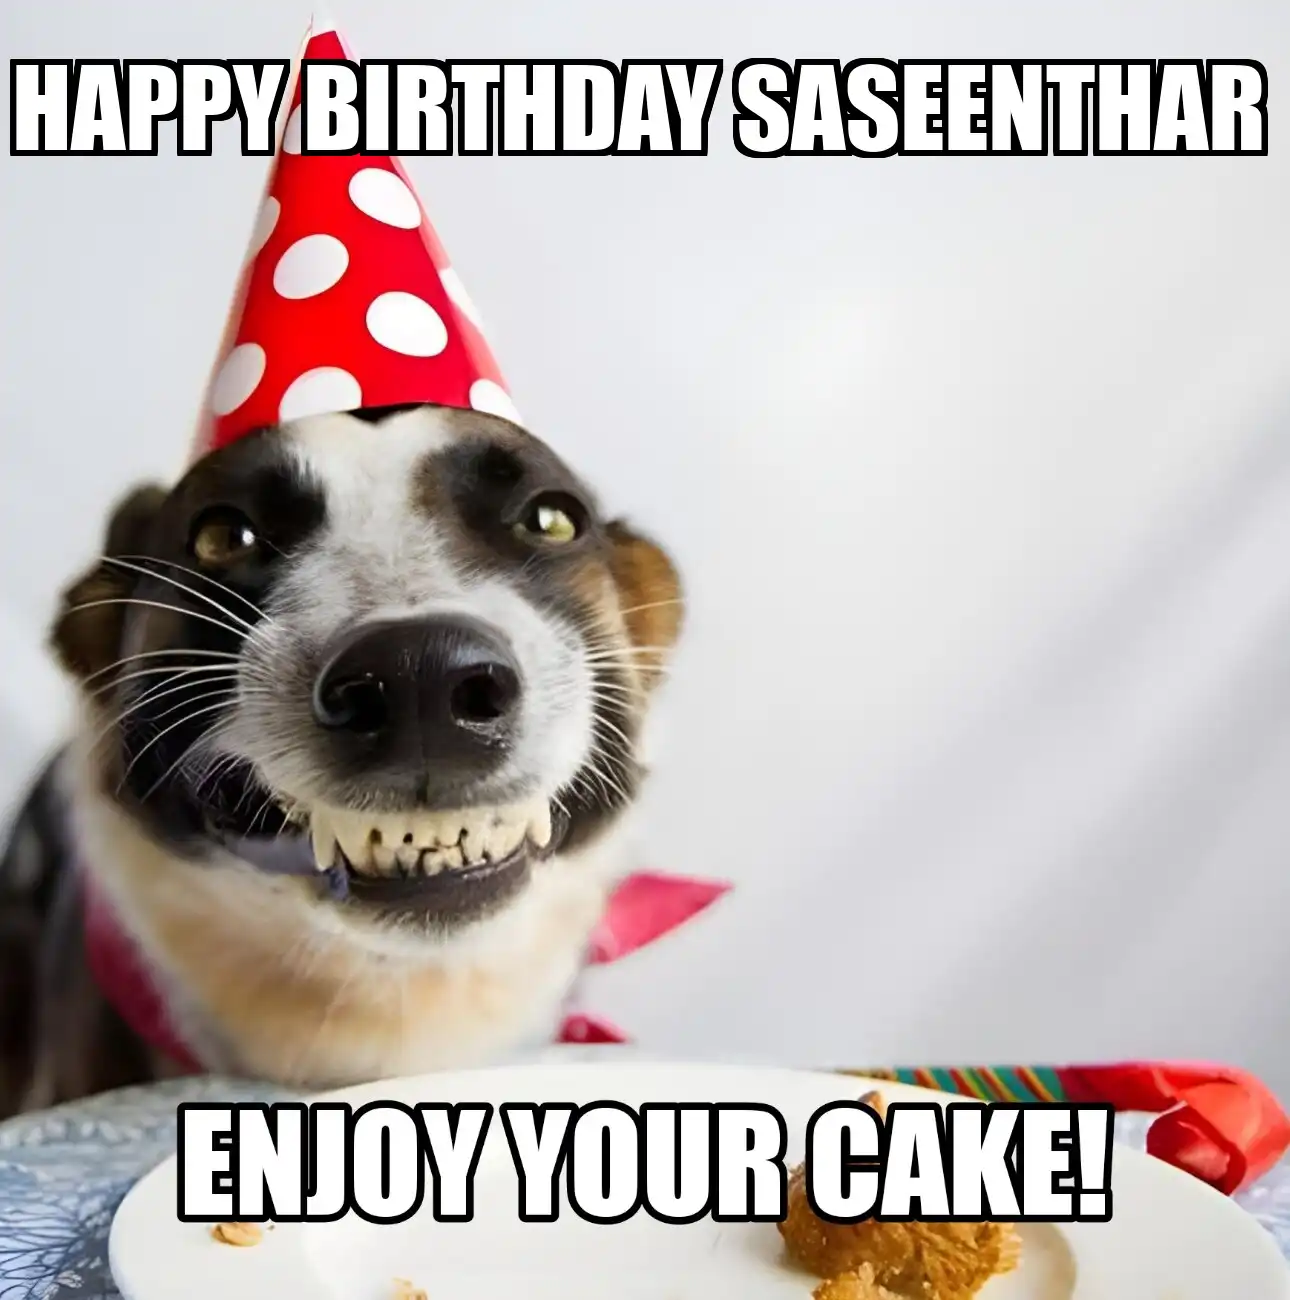 Happy Birthday Saseenthar Enjoy Your Cake Dog Meme